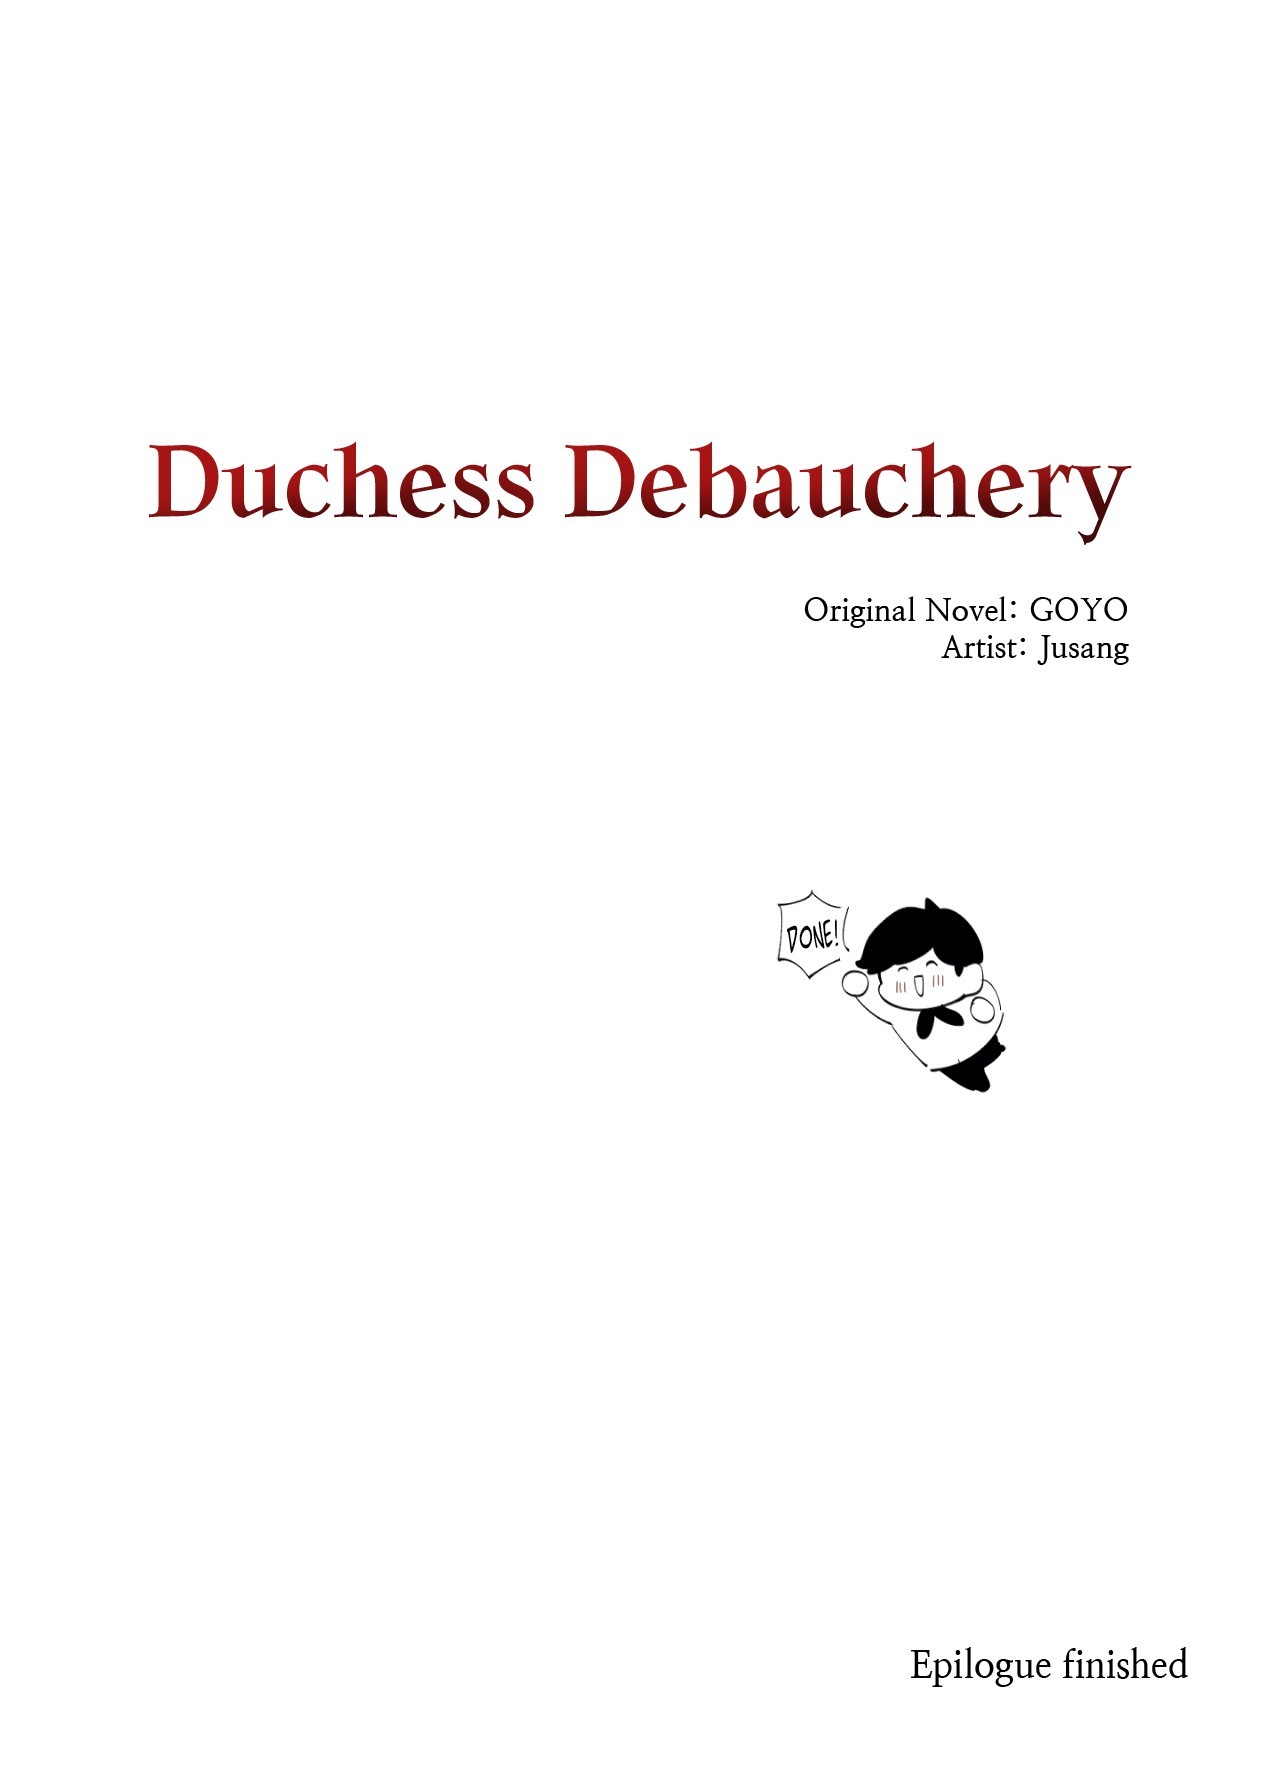 Duchess Debauchery image